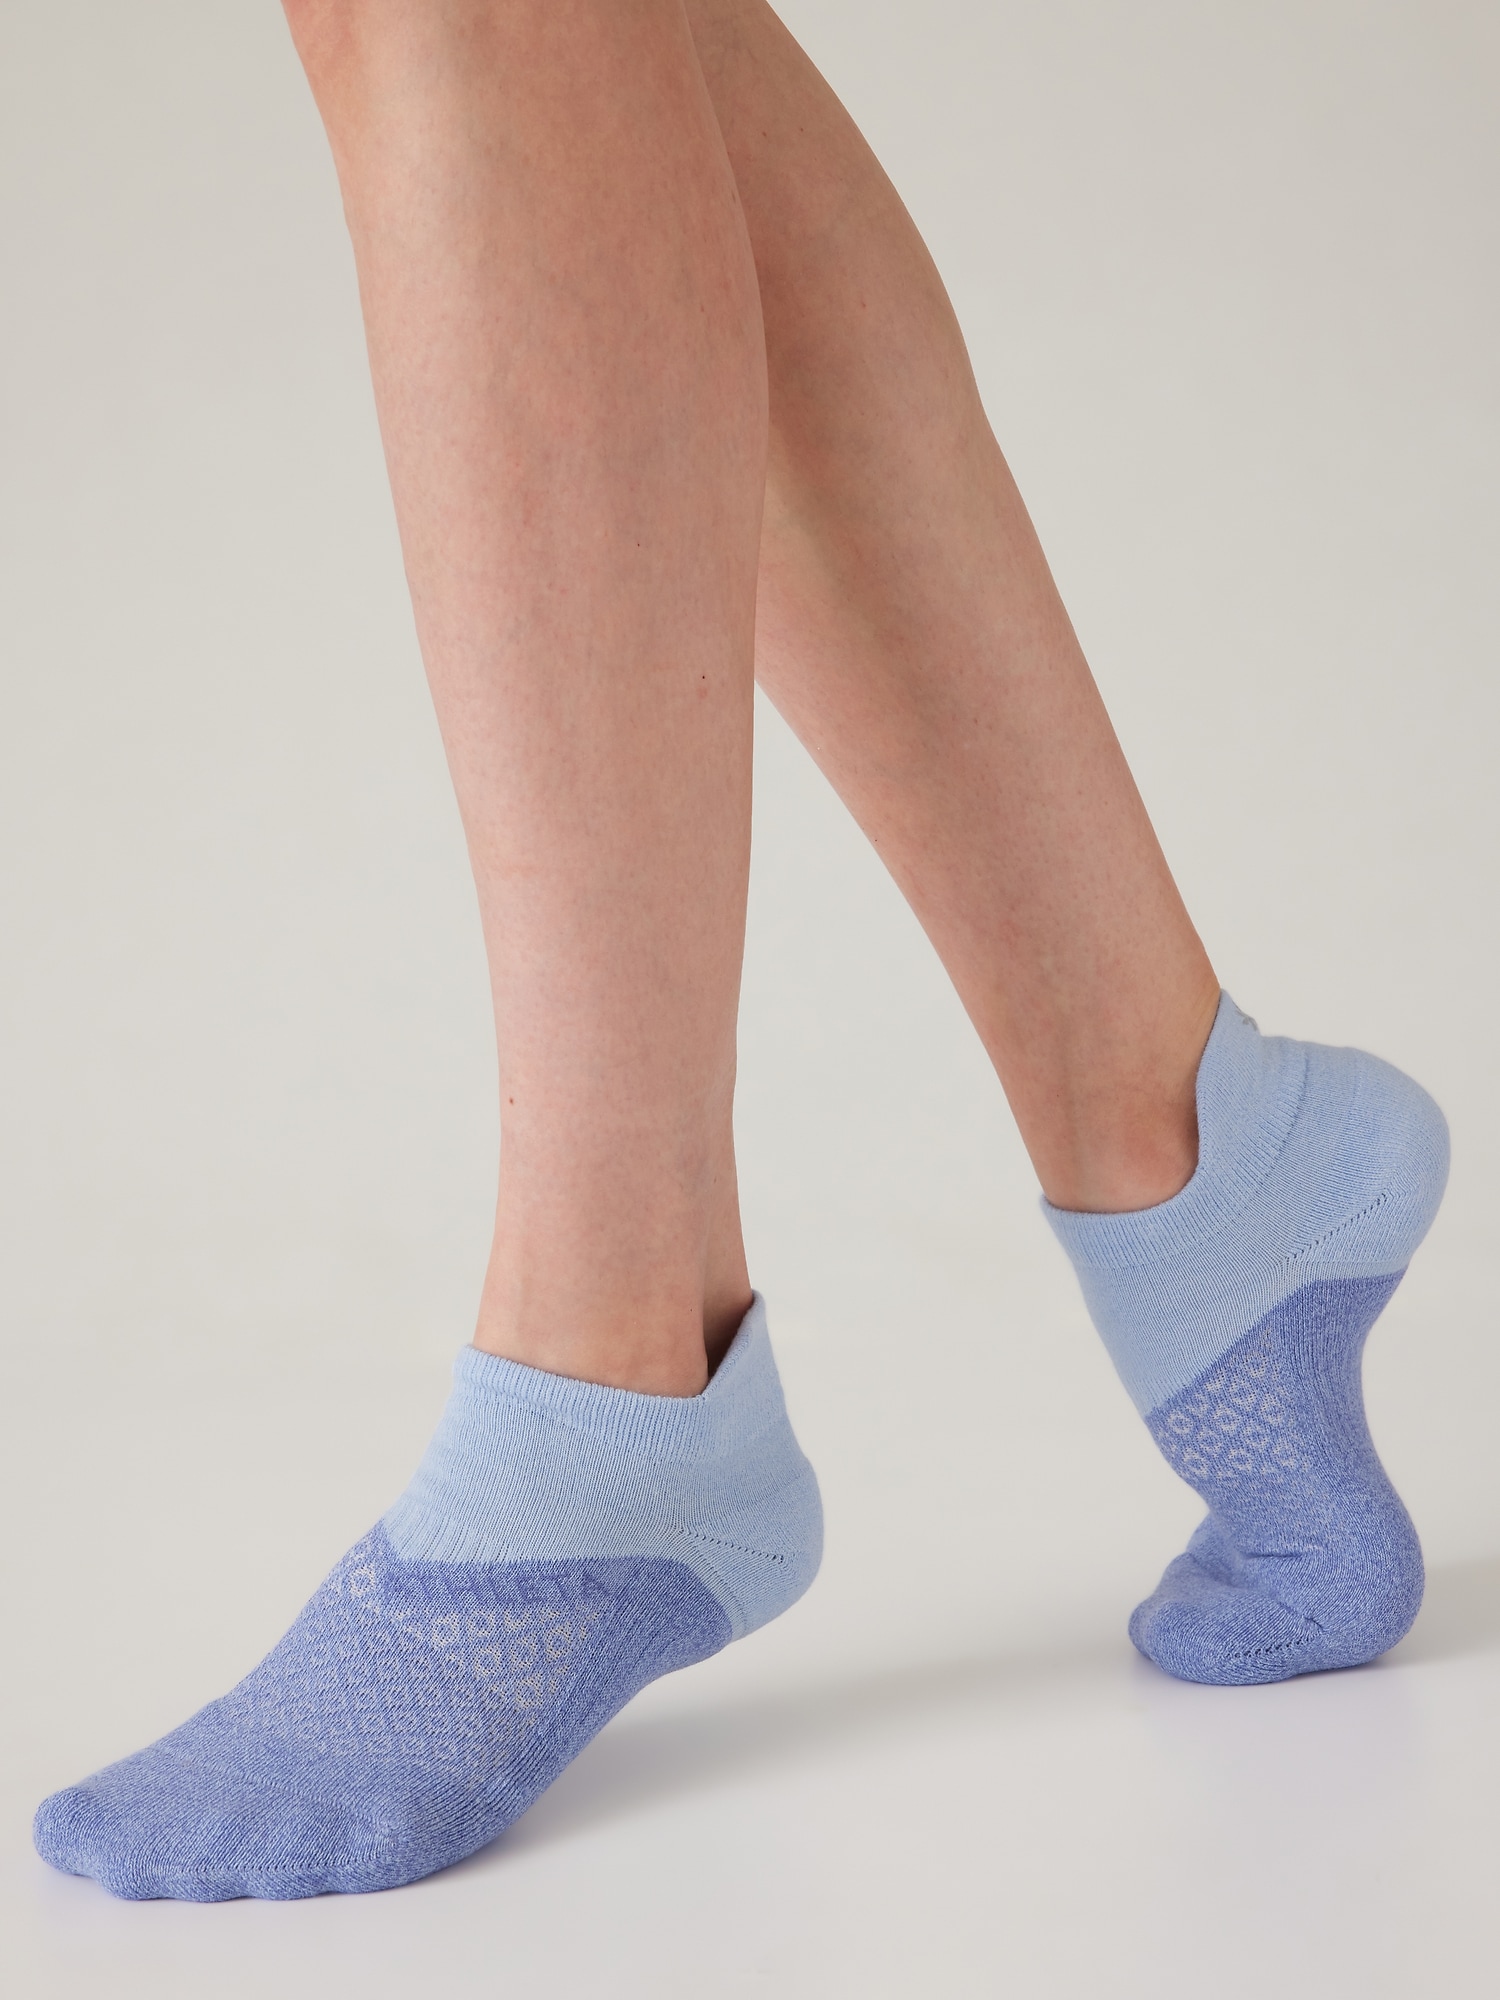 Performance Ankle Socks 6-Pack for Women